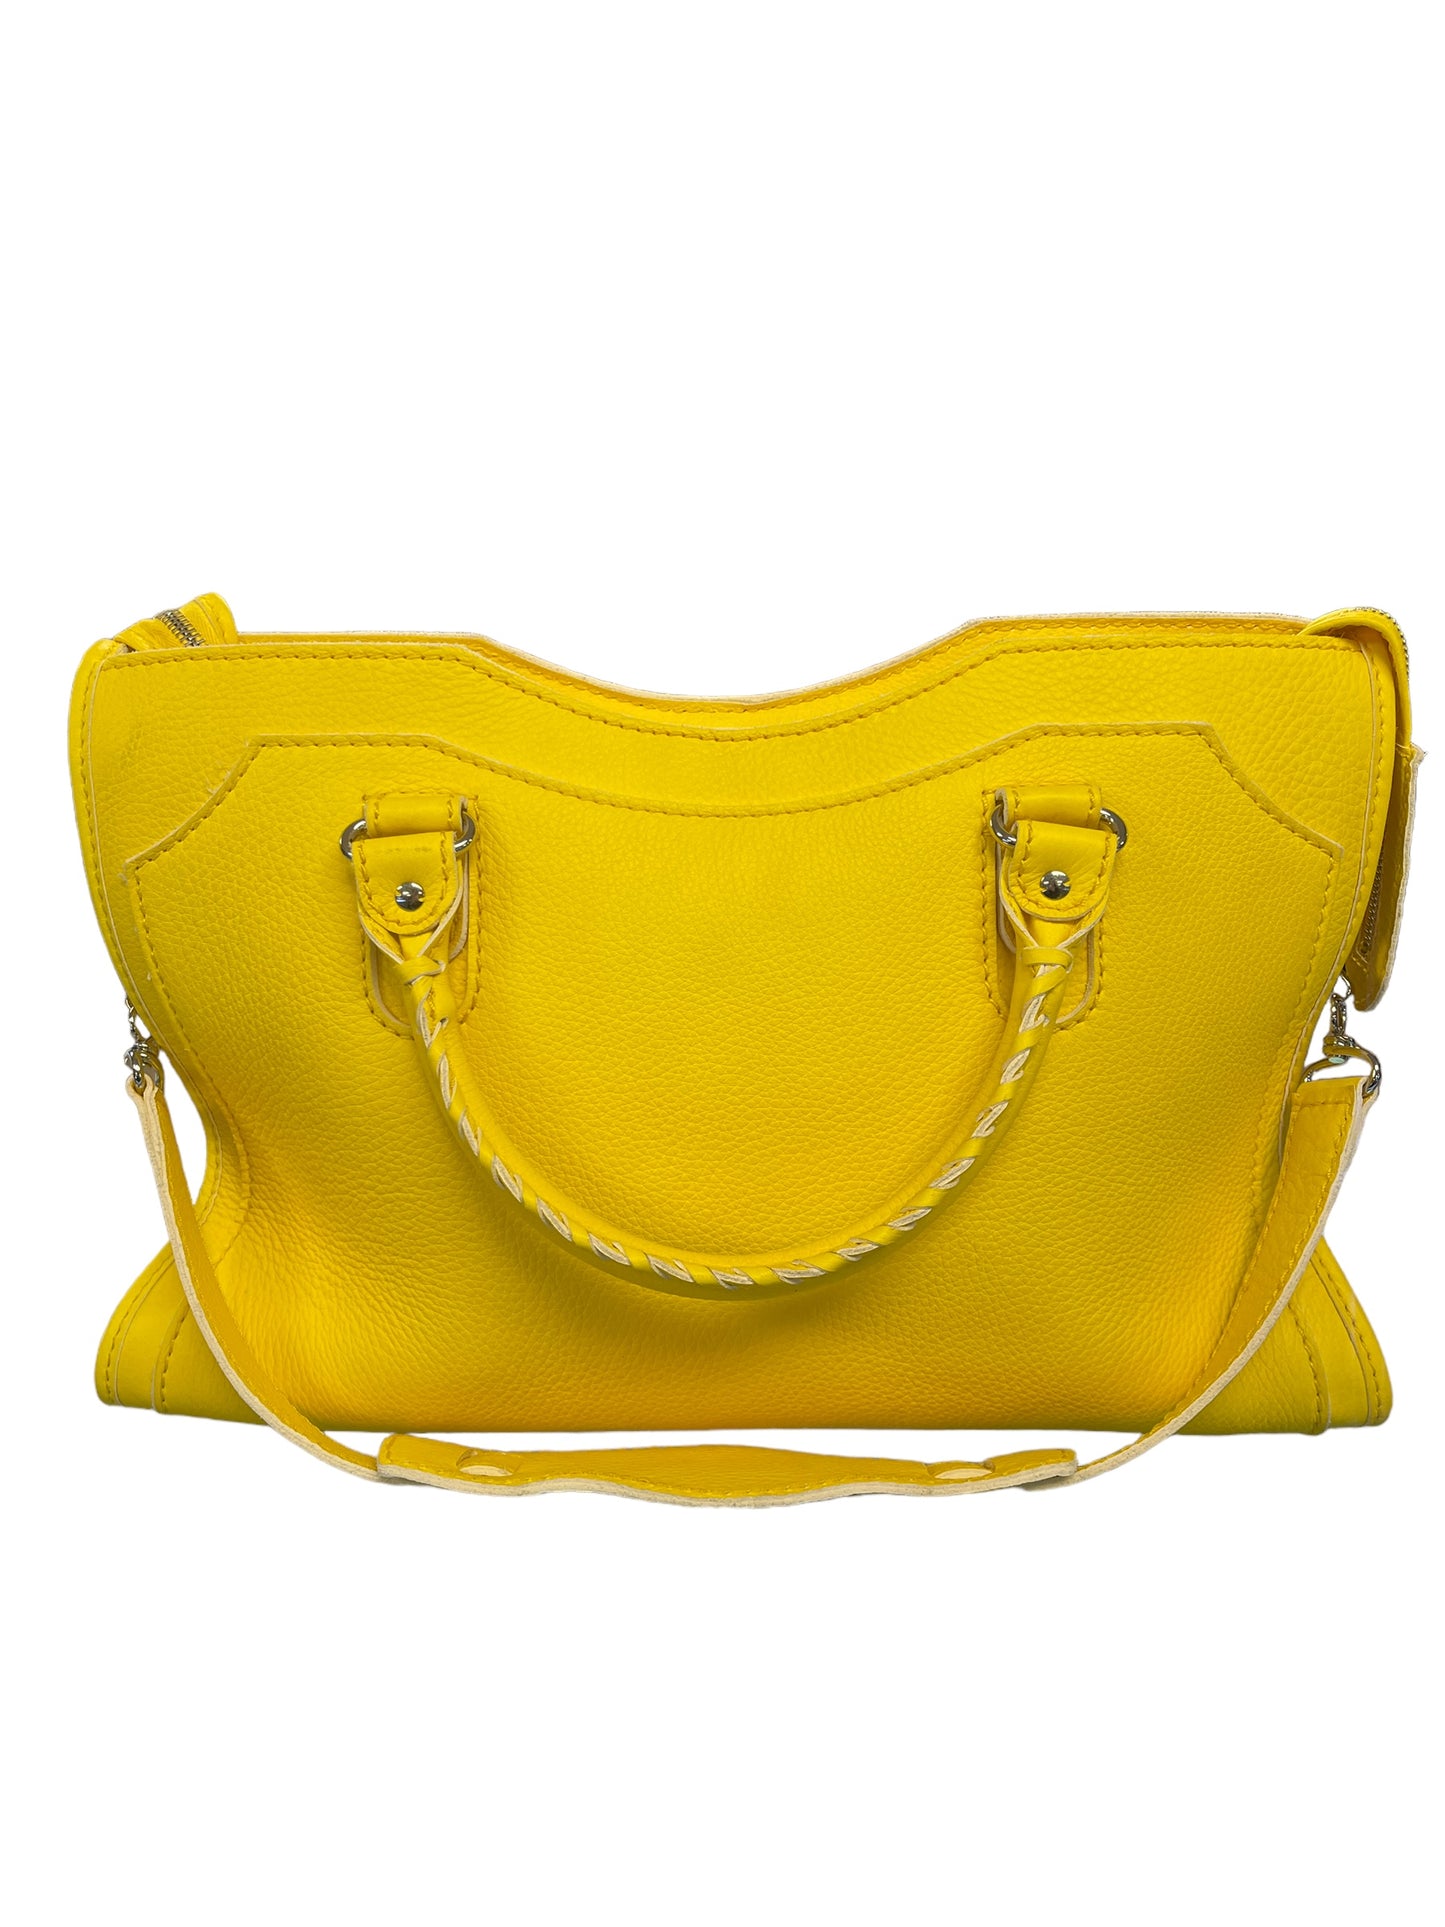 Balenciaga - City Bag in Yellow 0179783